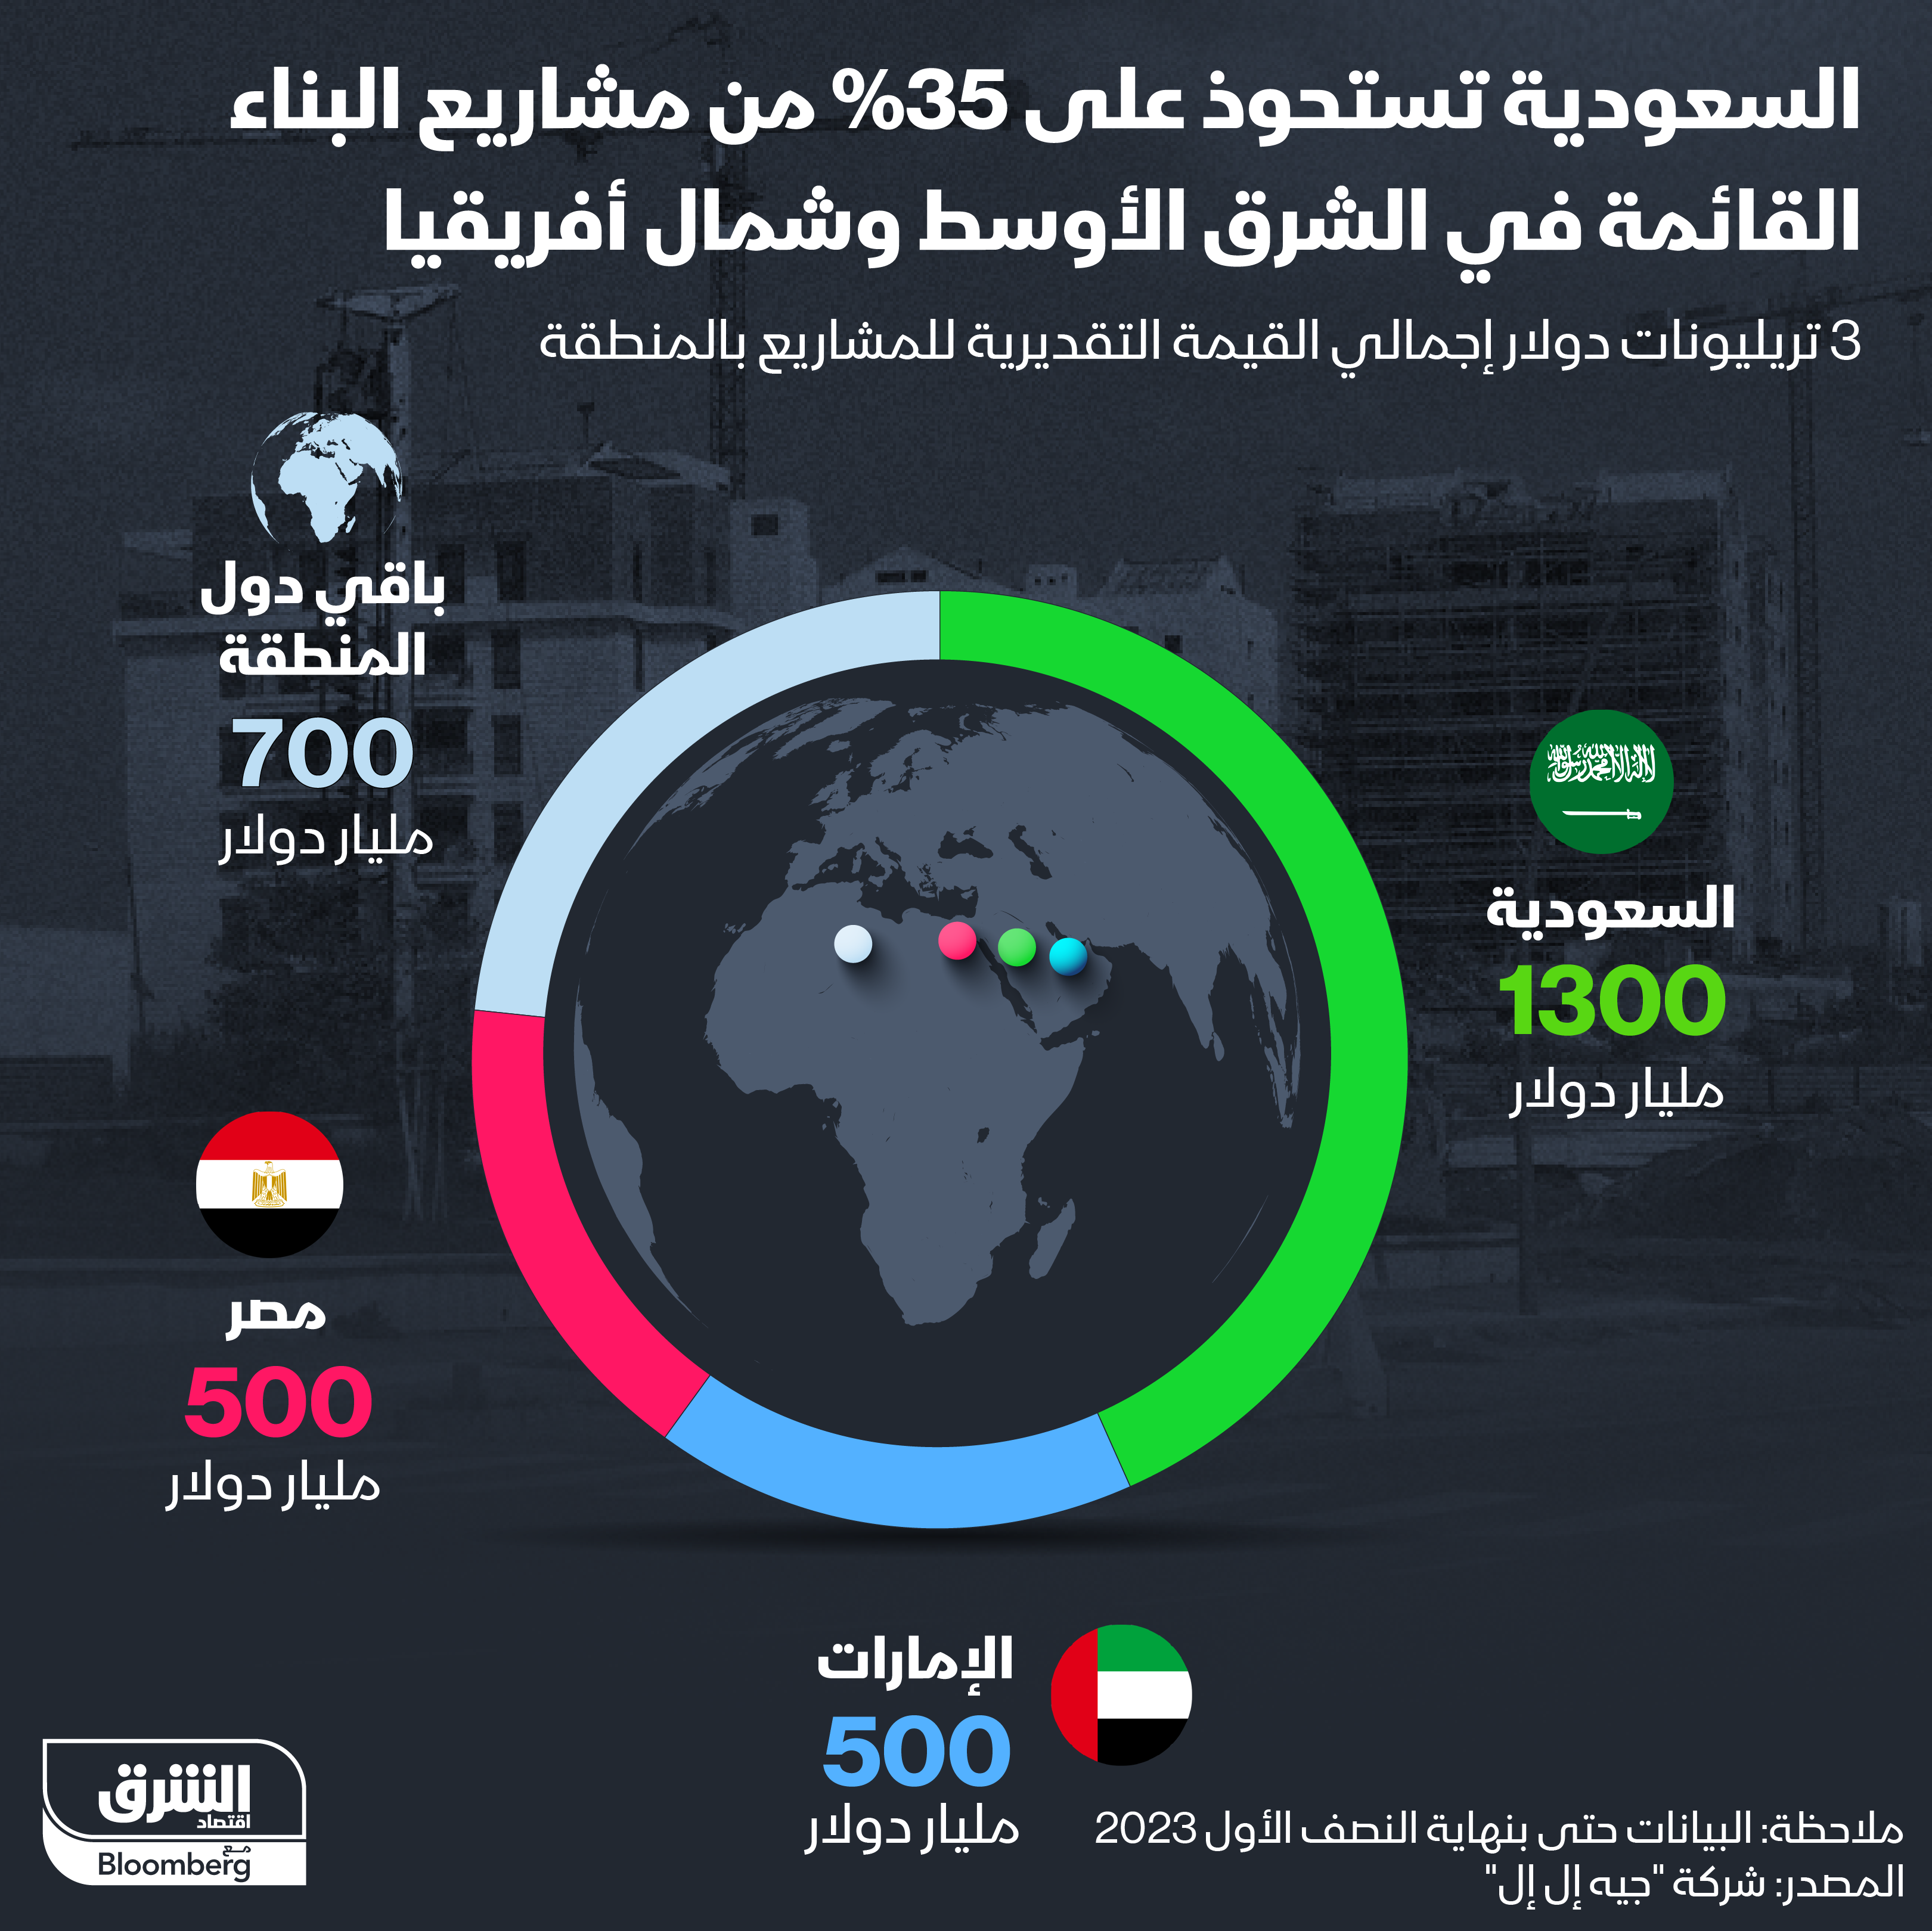 قيمة وتوزيع مشاريع البناء القائمة في الشرق الأوسط وشمال أفريقيا